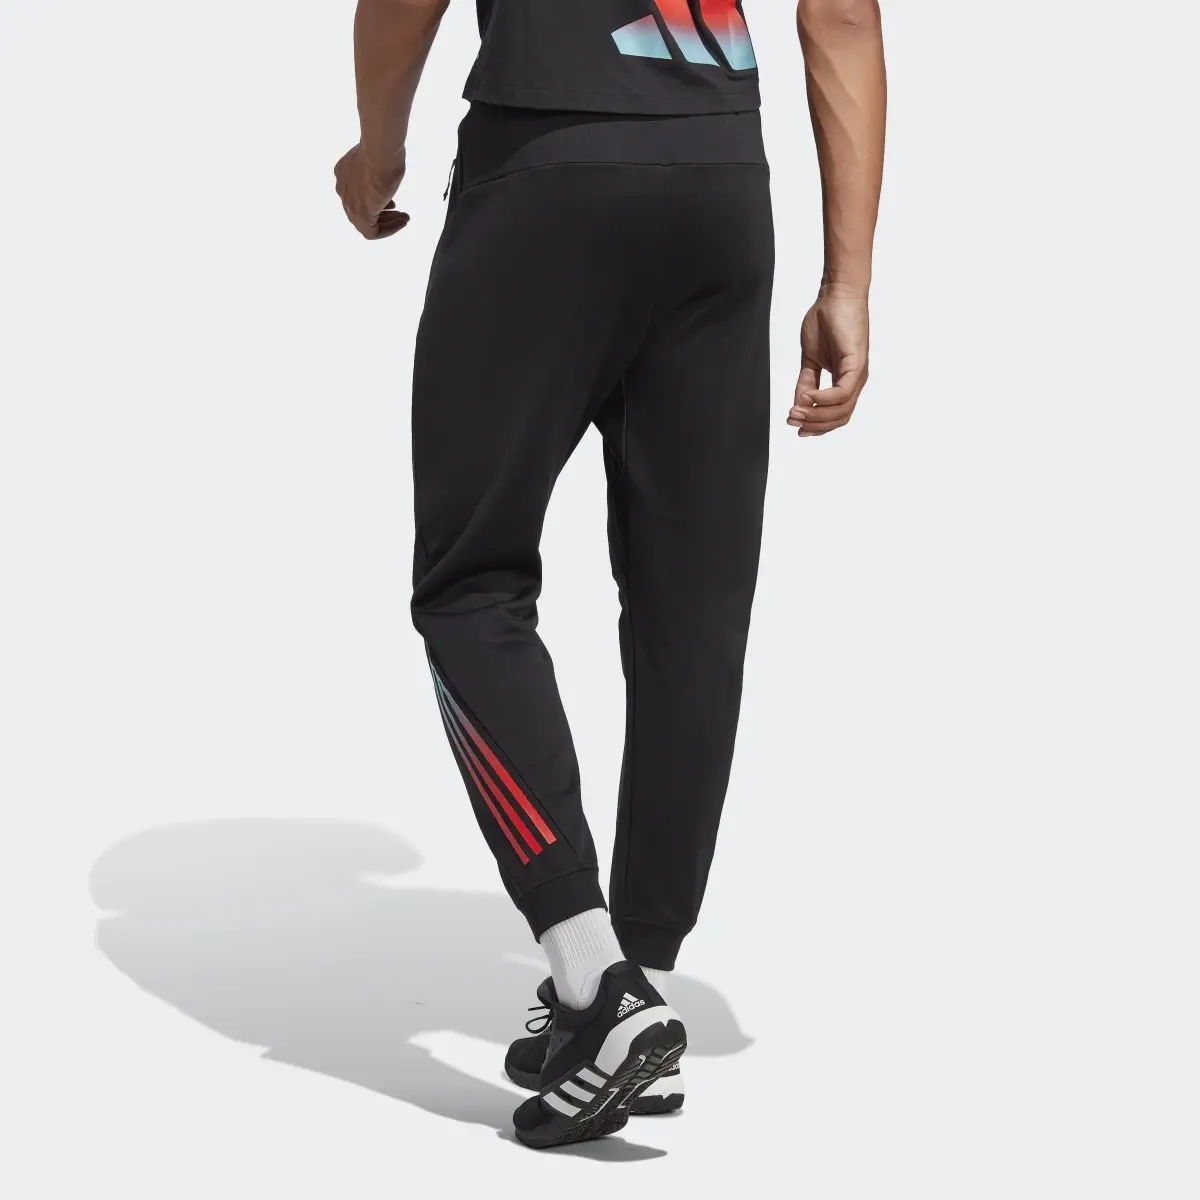 Adidas Train Icons 3-Stripes Training Pants. 2